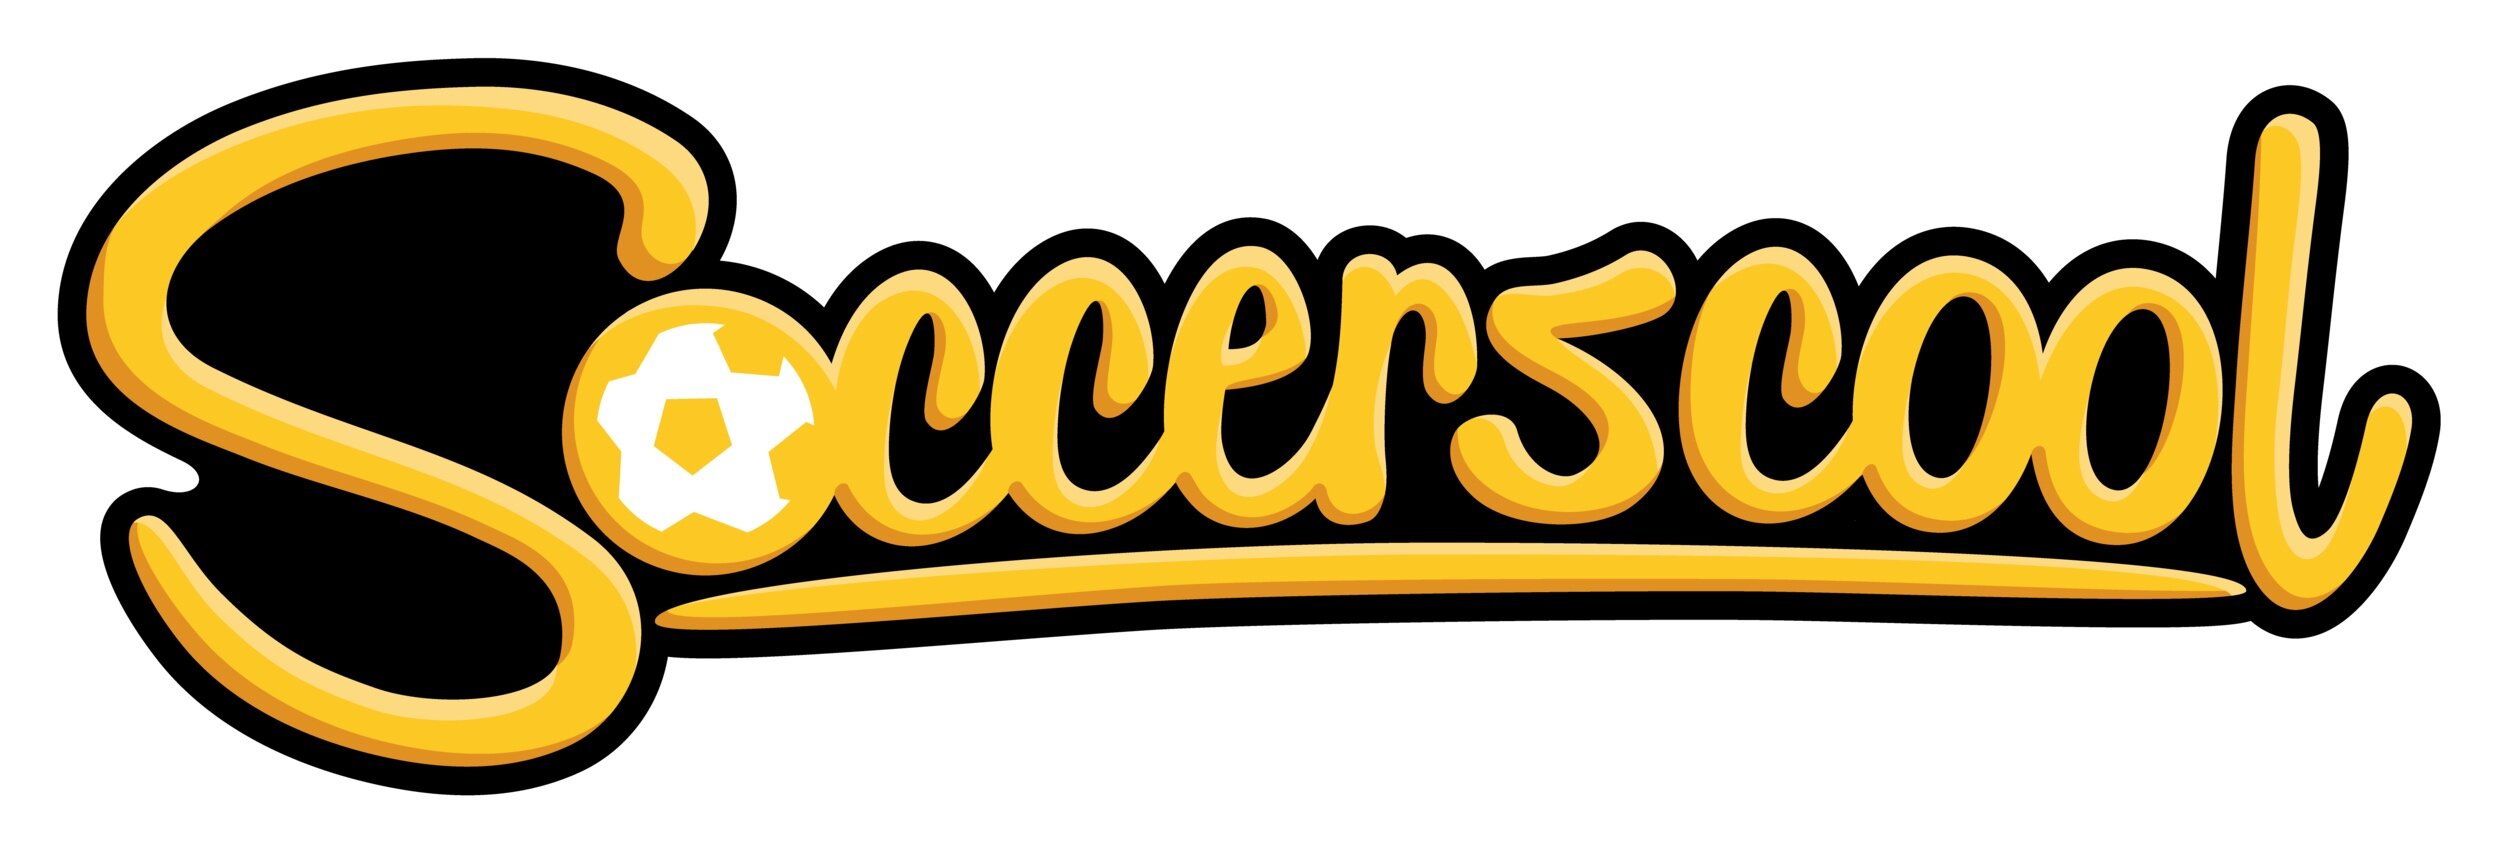 Soccerscool_Logo_FullColour.jpg